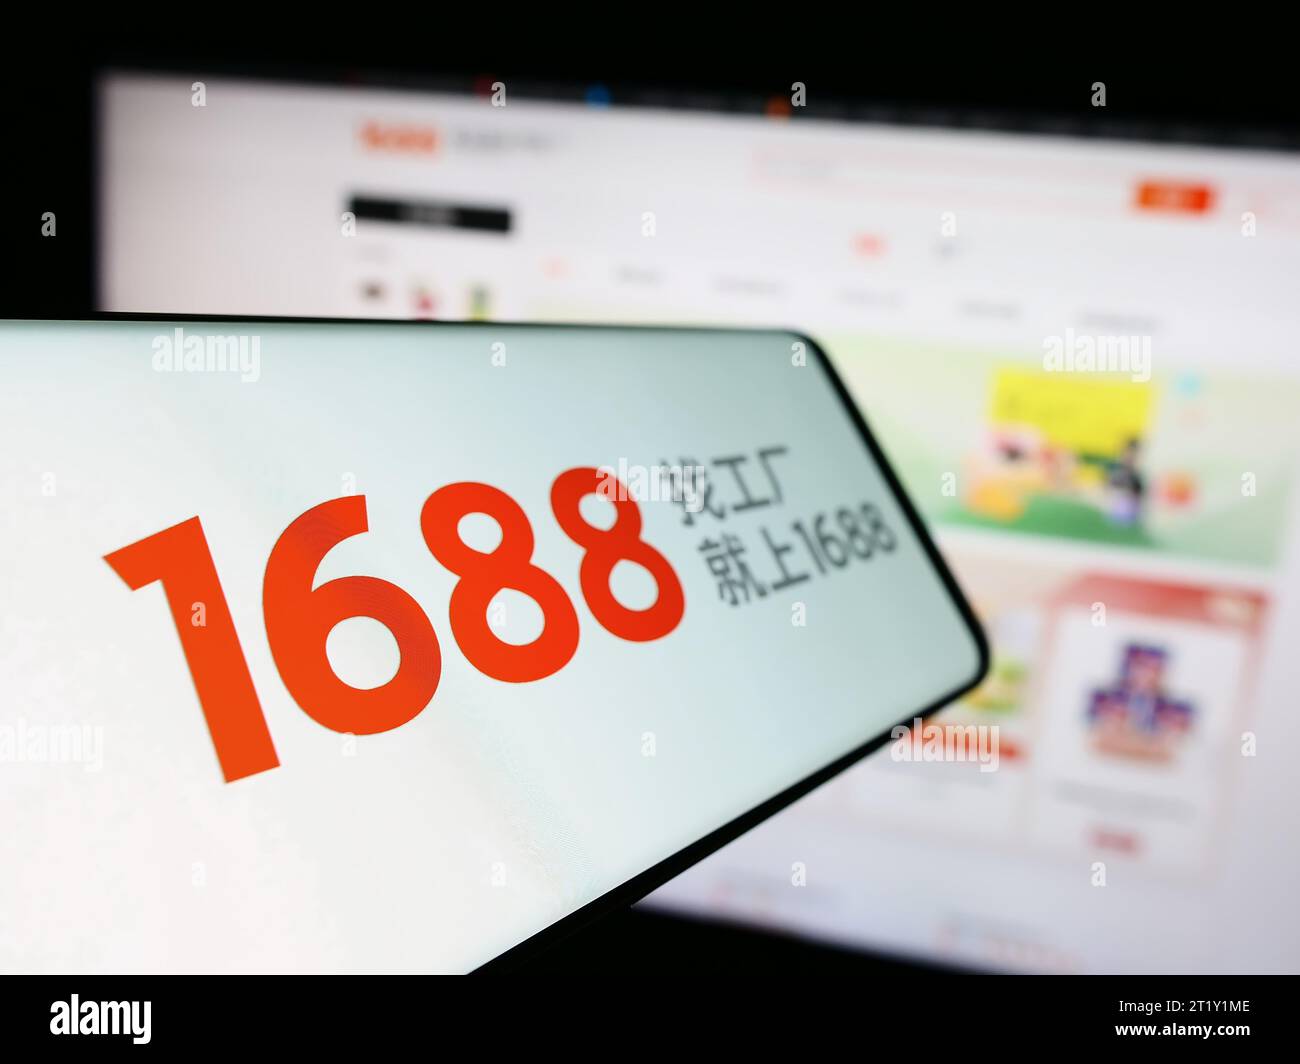 Smartphone mit Logo des chinesischen Online-Shops 1688.com (Alibaba) vor der Business-Website. Fokus auf der linken Seite des Telefondisplays. Stockfoto